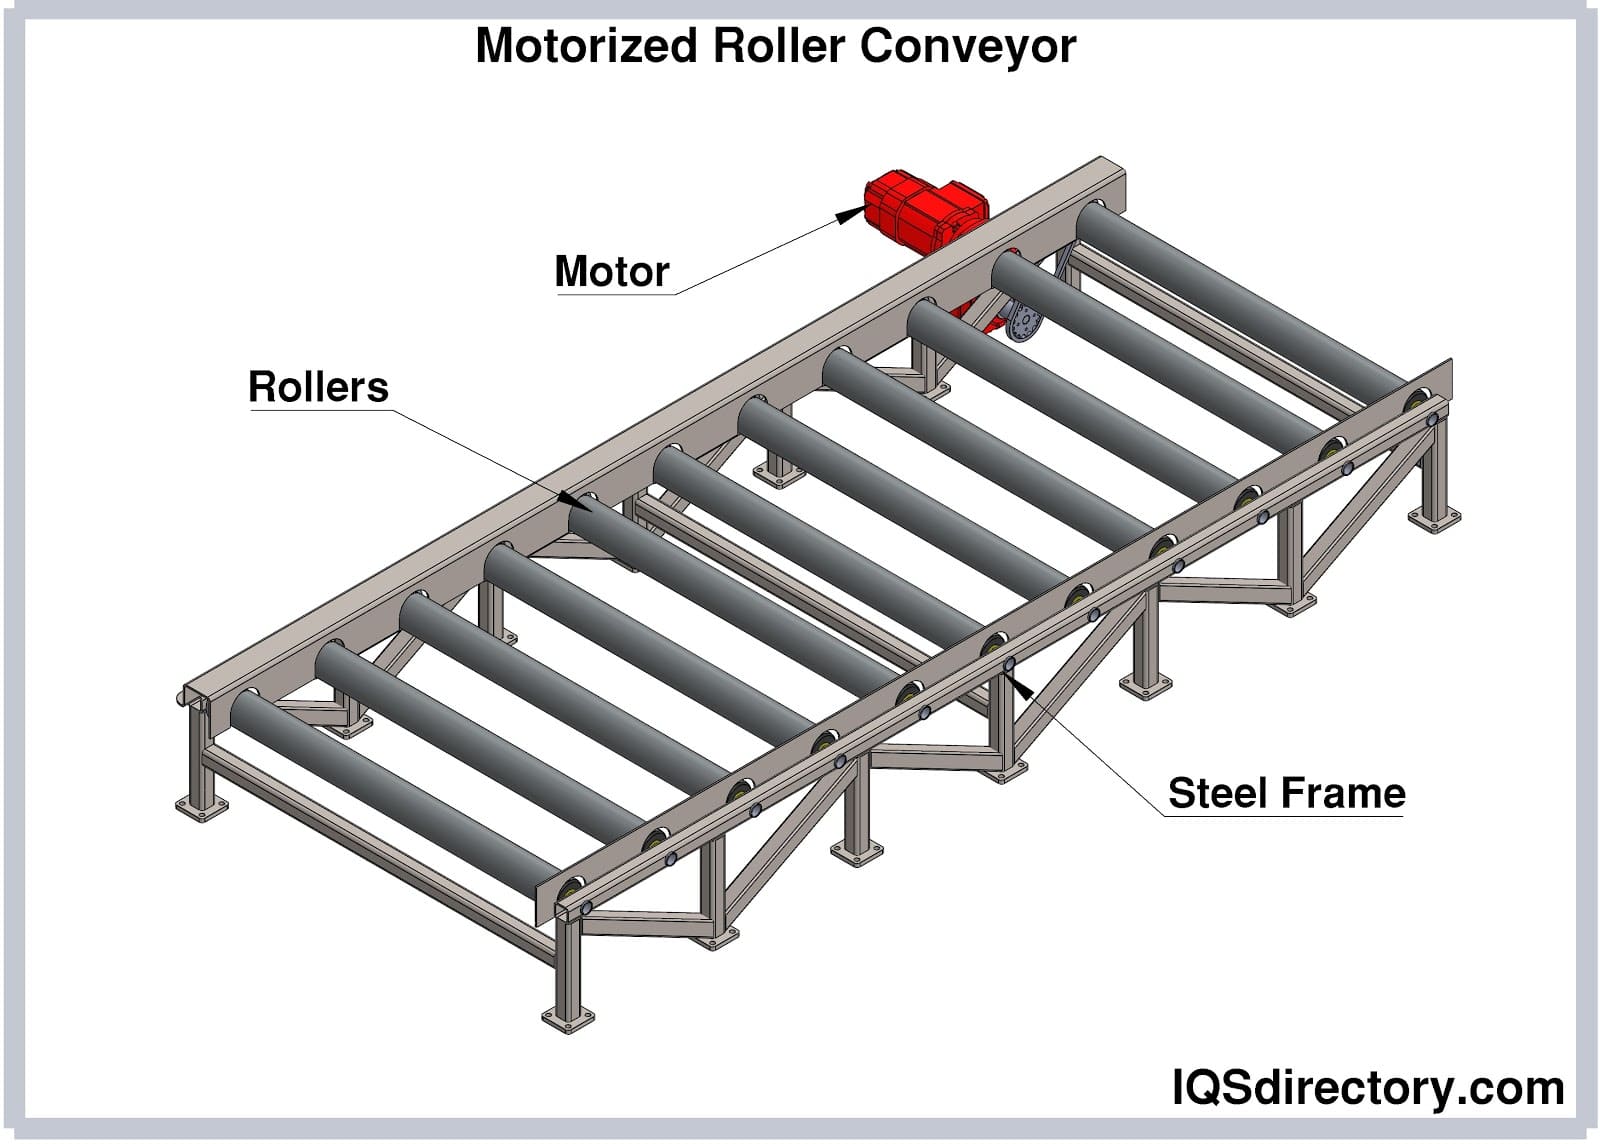 Motorized Roller Conveyor